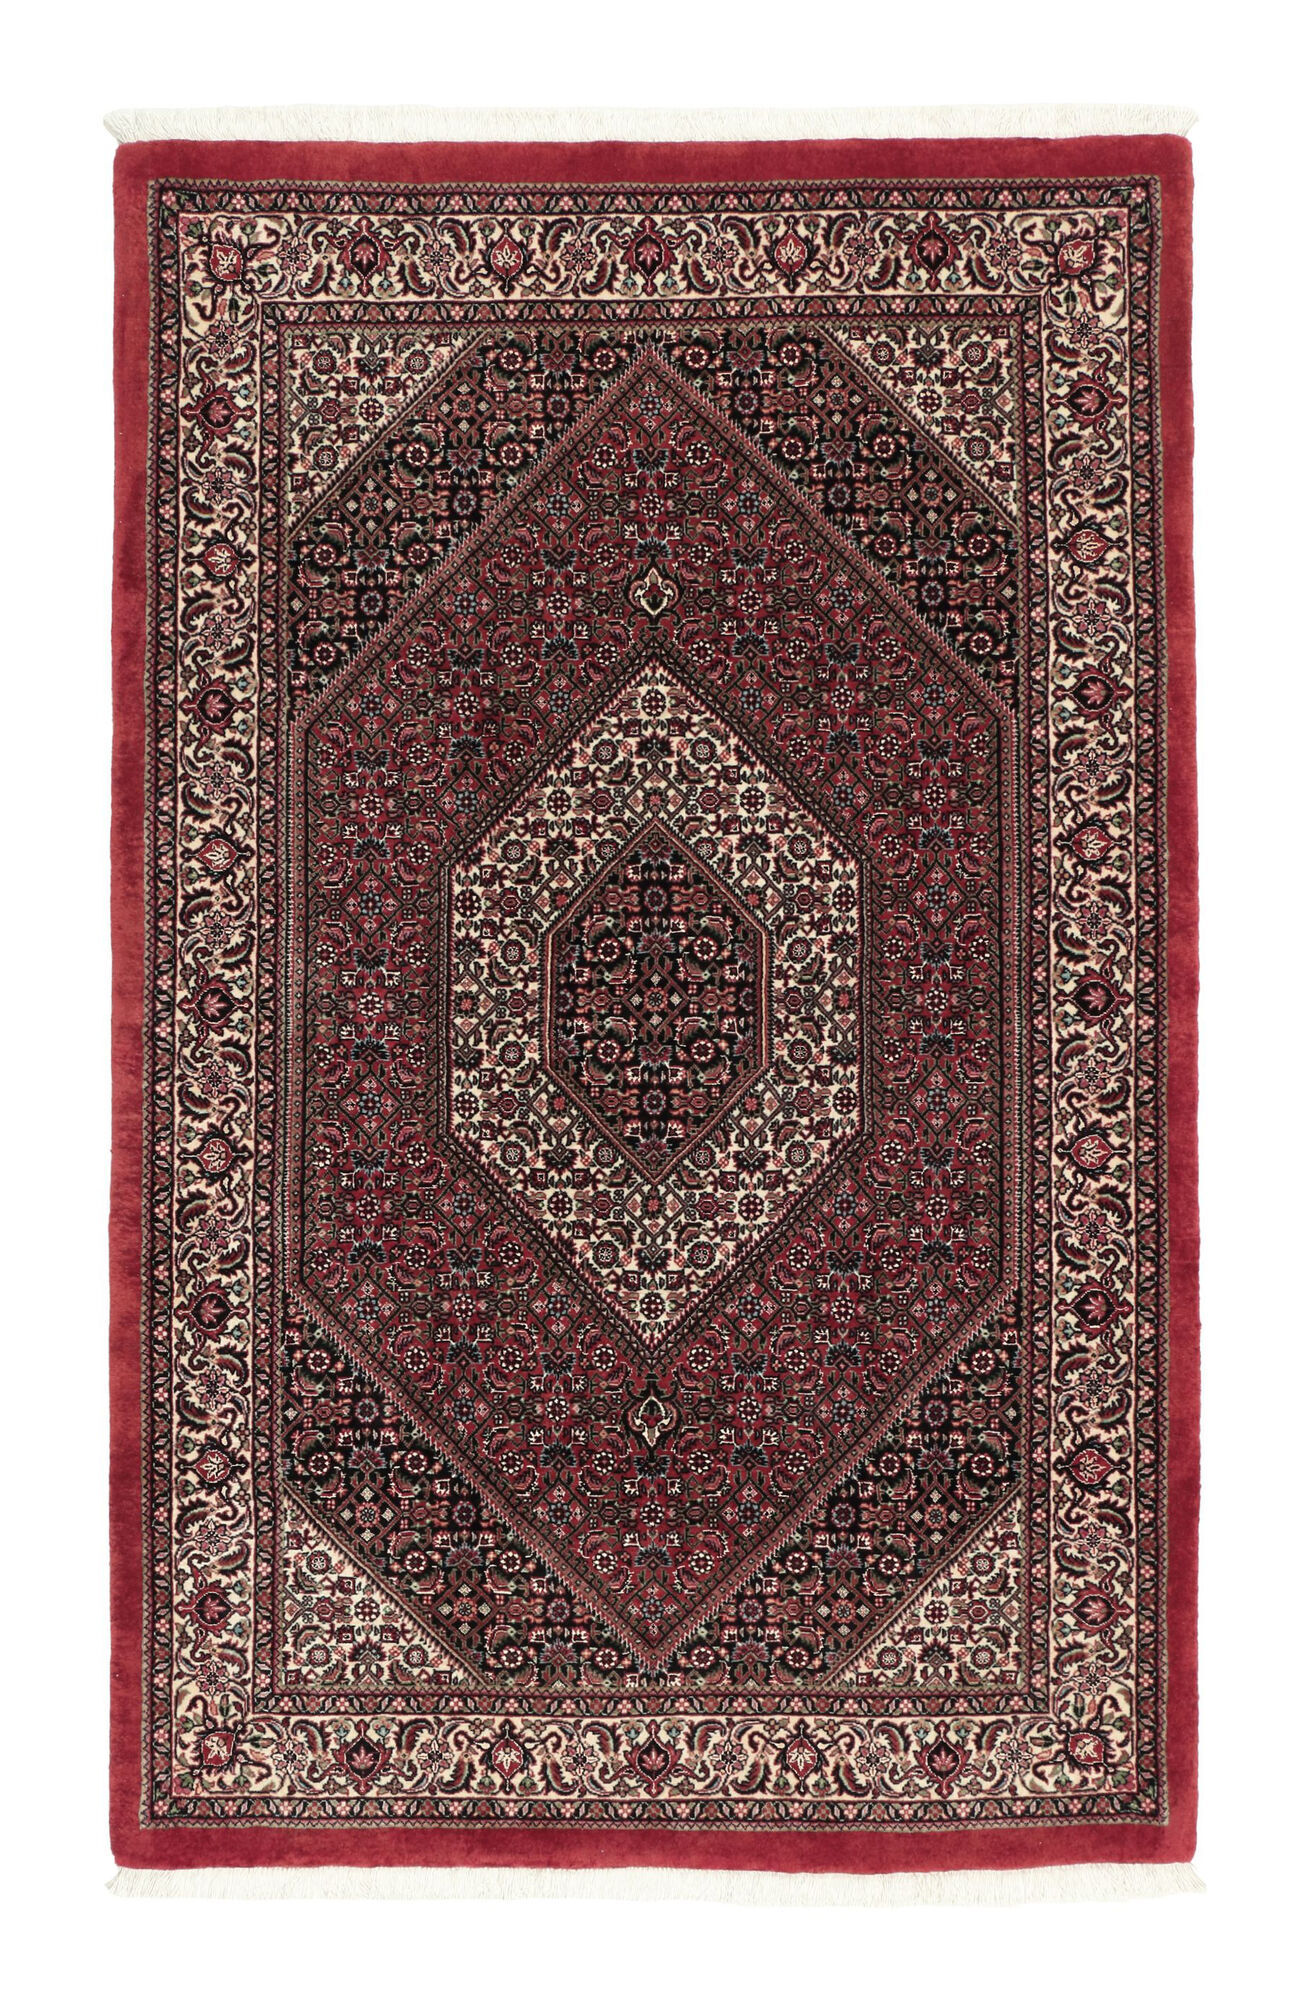 Annodato a mano. Provenienza: Persia / Iran Bidjar con di seta Tappeto 110x180